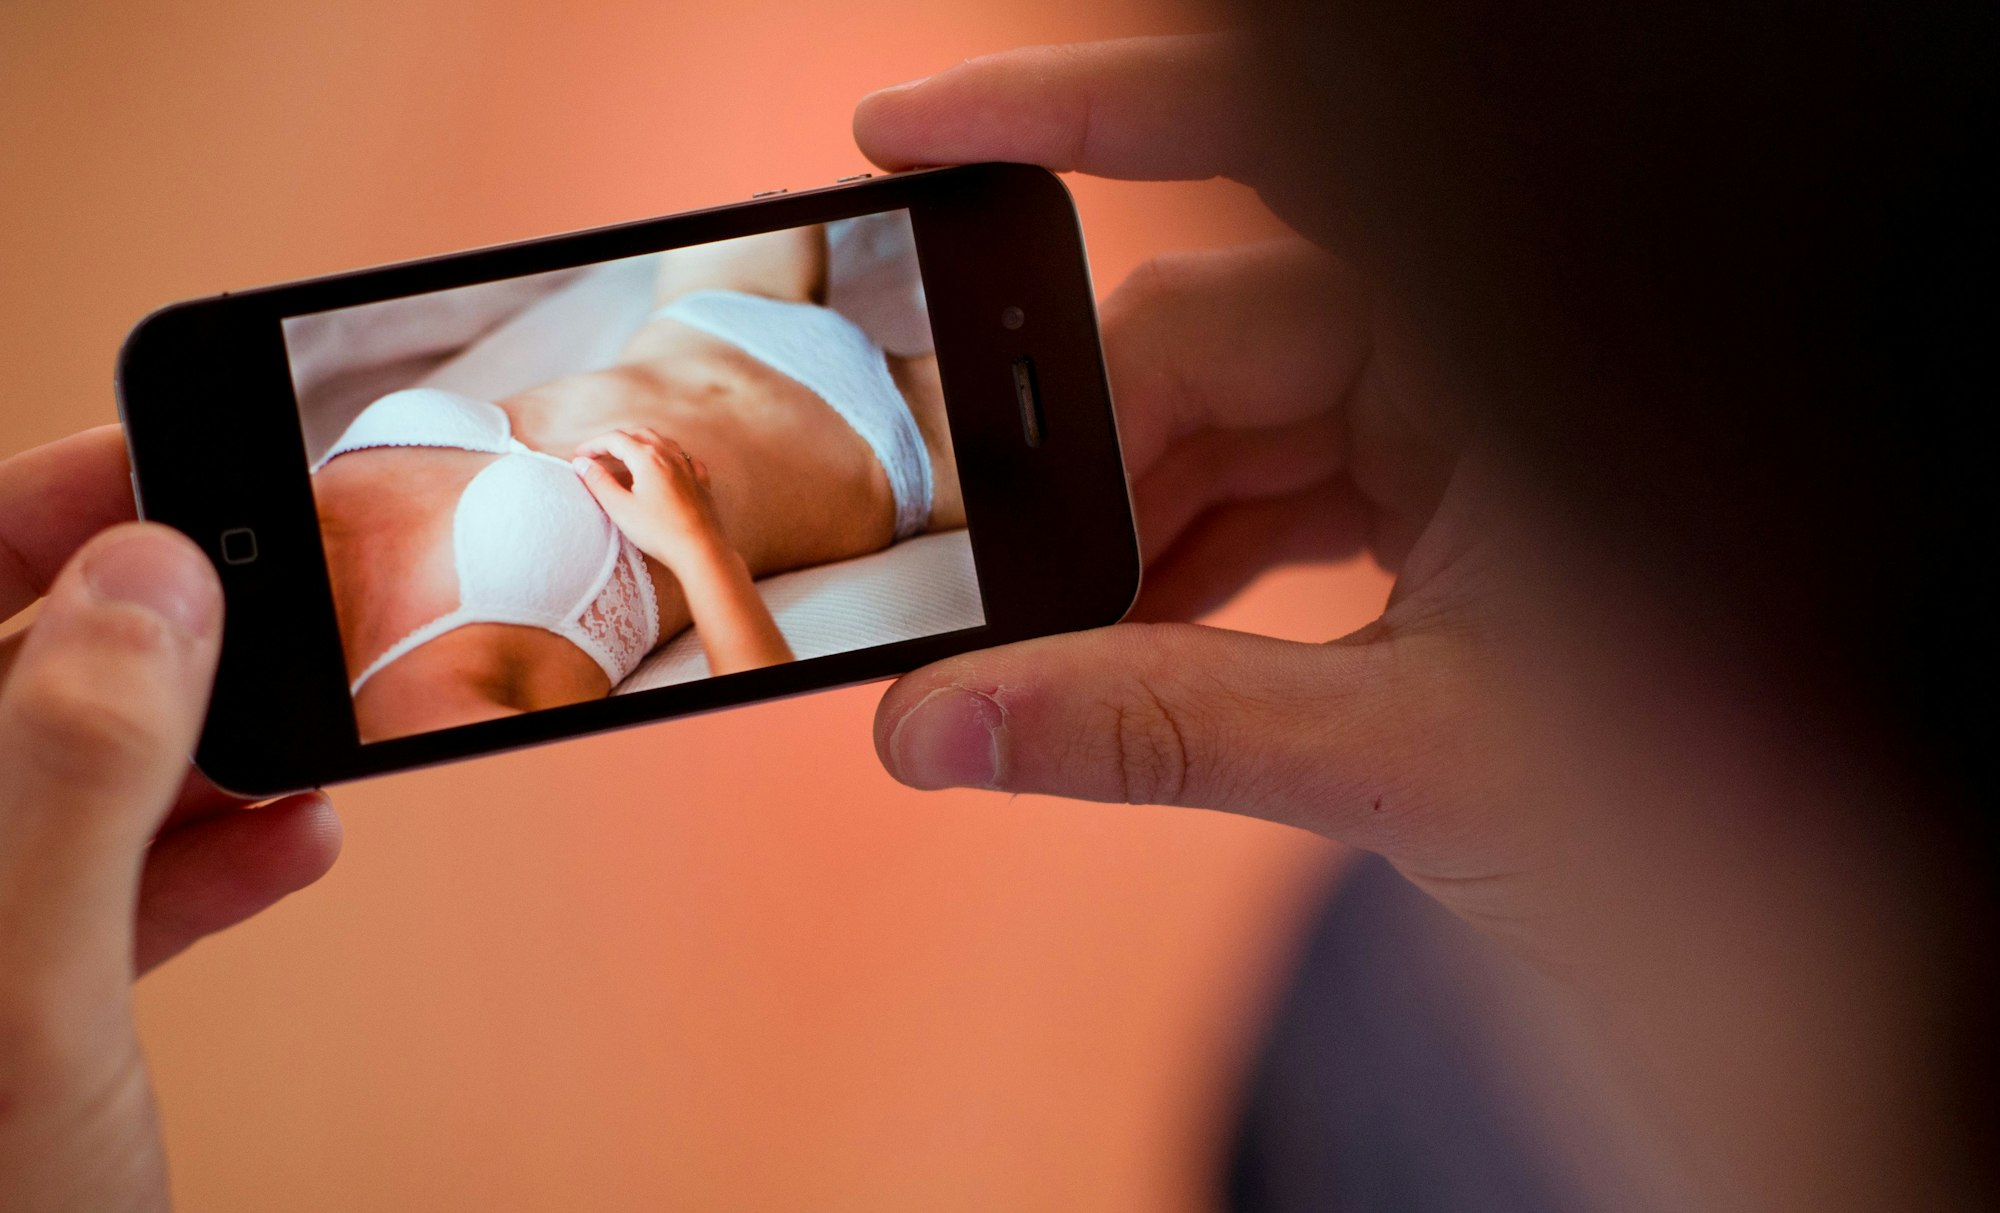 Ein junger Mann hält am 31.10.2013 in Hannover (Niedersachsen) ein Smartphone, auf dem ein erotisches Foto einer jungen erwachsenen Frau zu sehen ist.